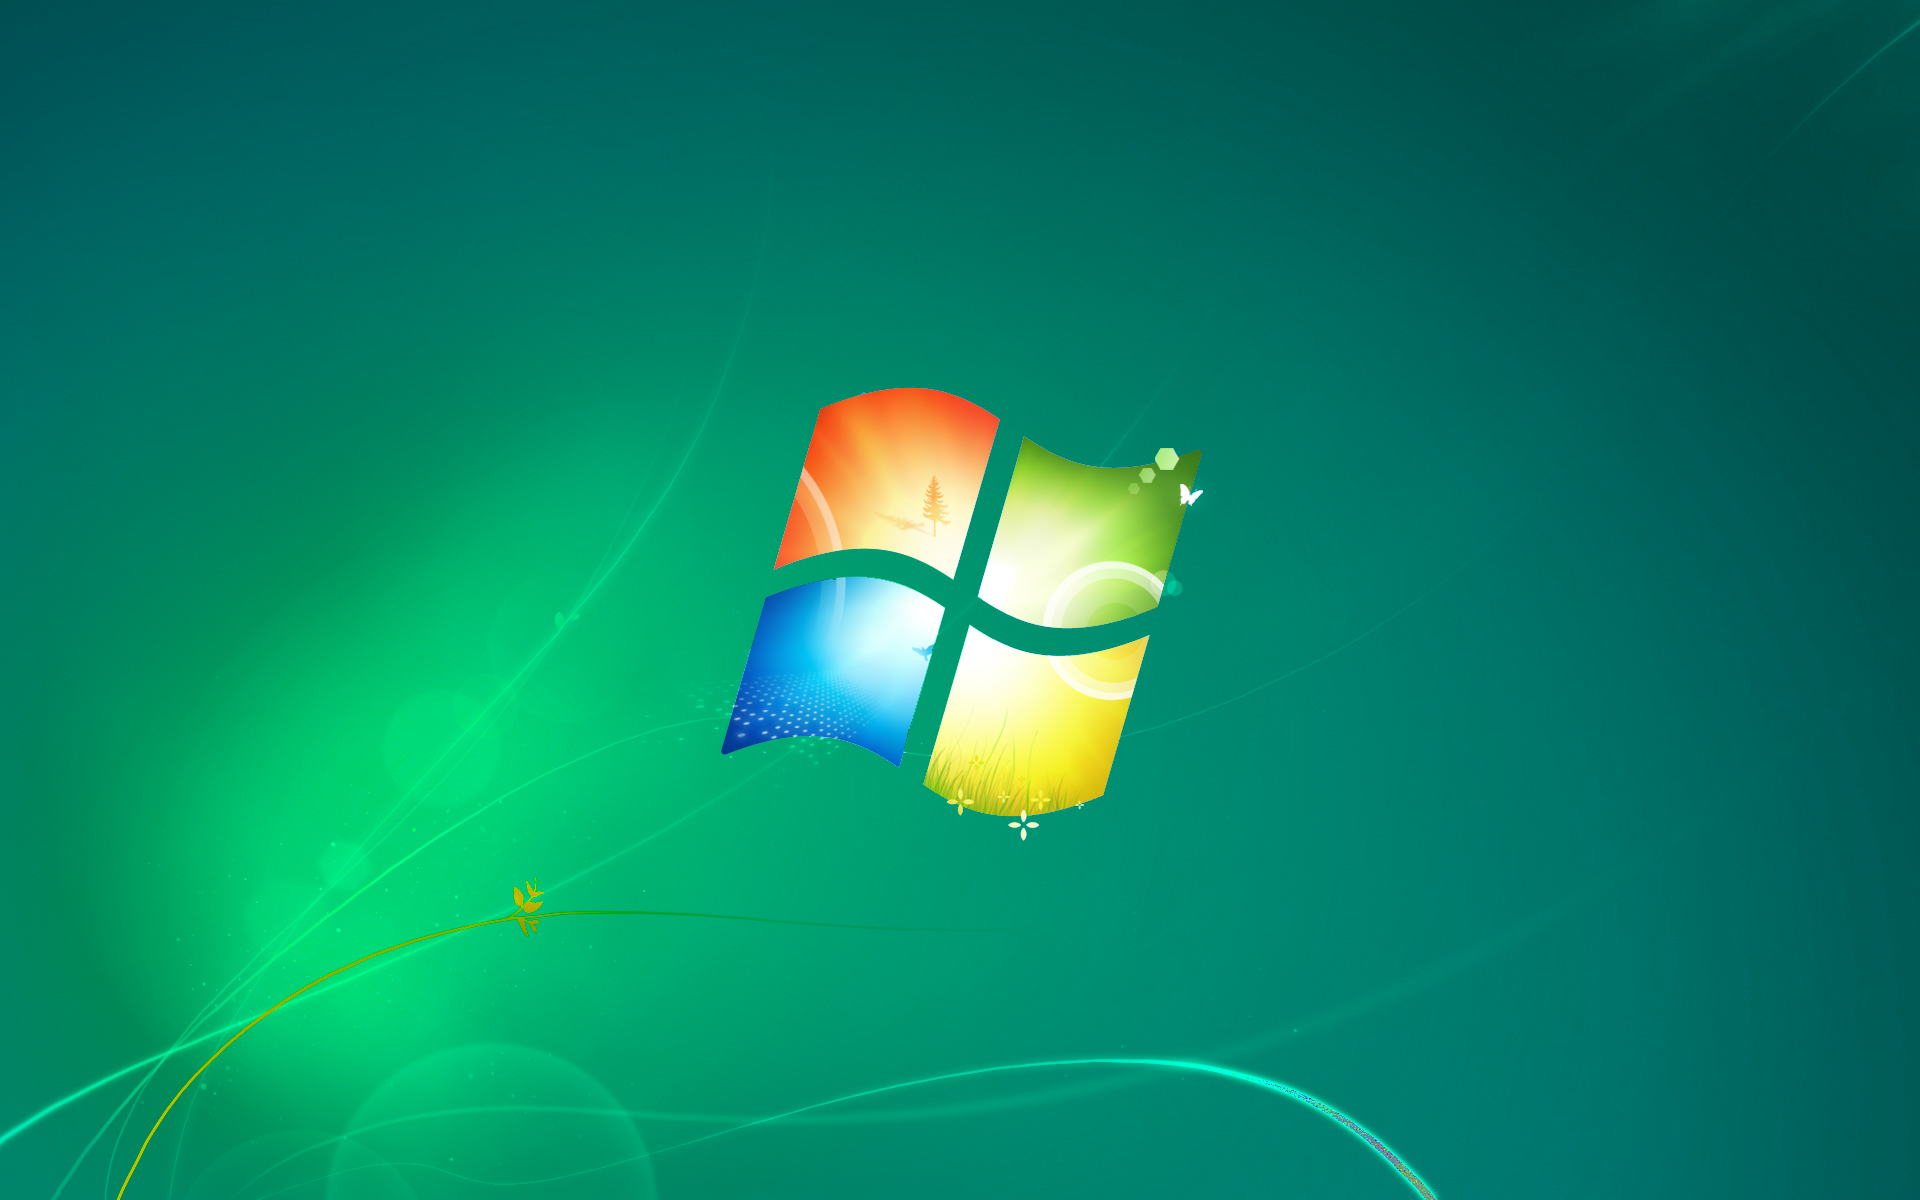 Hình nền mặc định Windows 7 phiên bản màu xanh lá cây là sự lựa chọn tuyệt vời cho bất kỳ ai yêu thích màu xanh. Với tông màu kết hợp giữa xanh lá cây tươi tắn và đậm, hình nền này sẽ mang tới cho bạn một không gian làm việc sáng tạo và thoải mái.